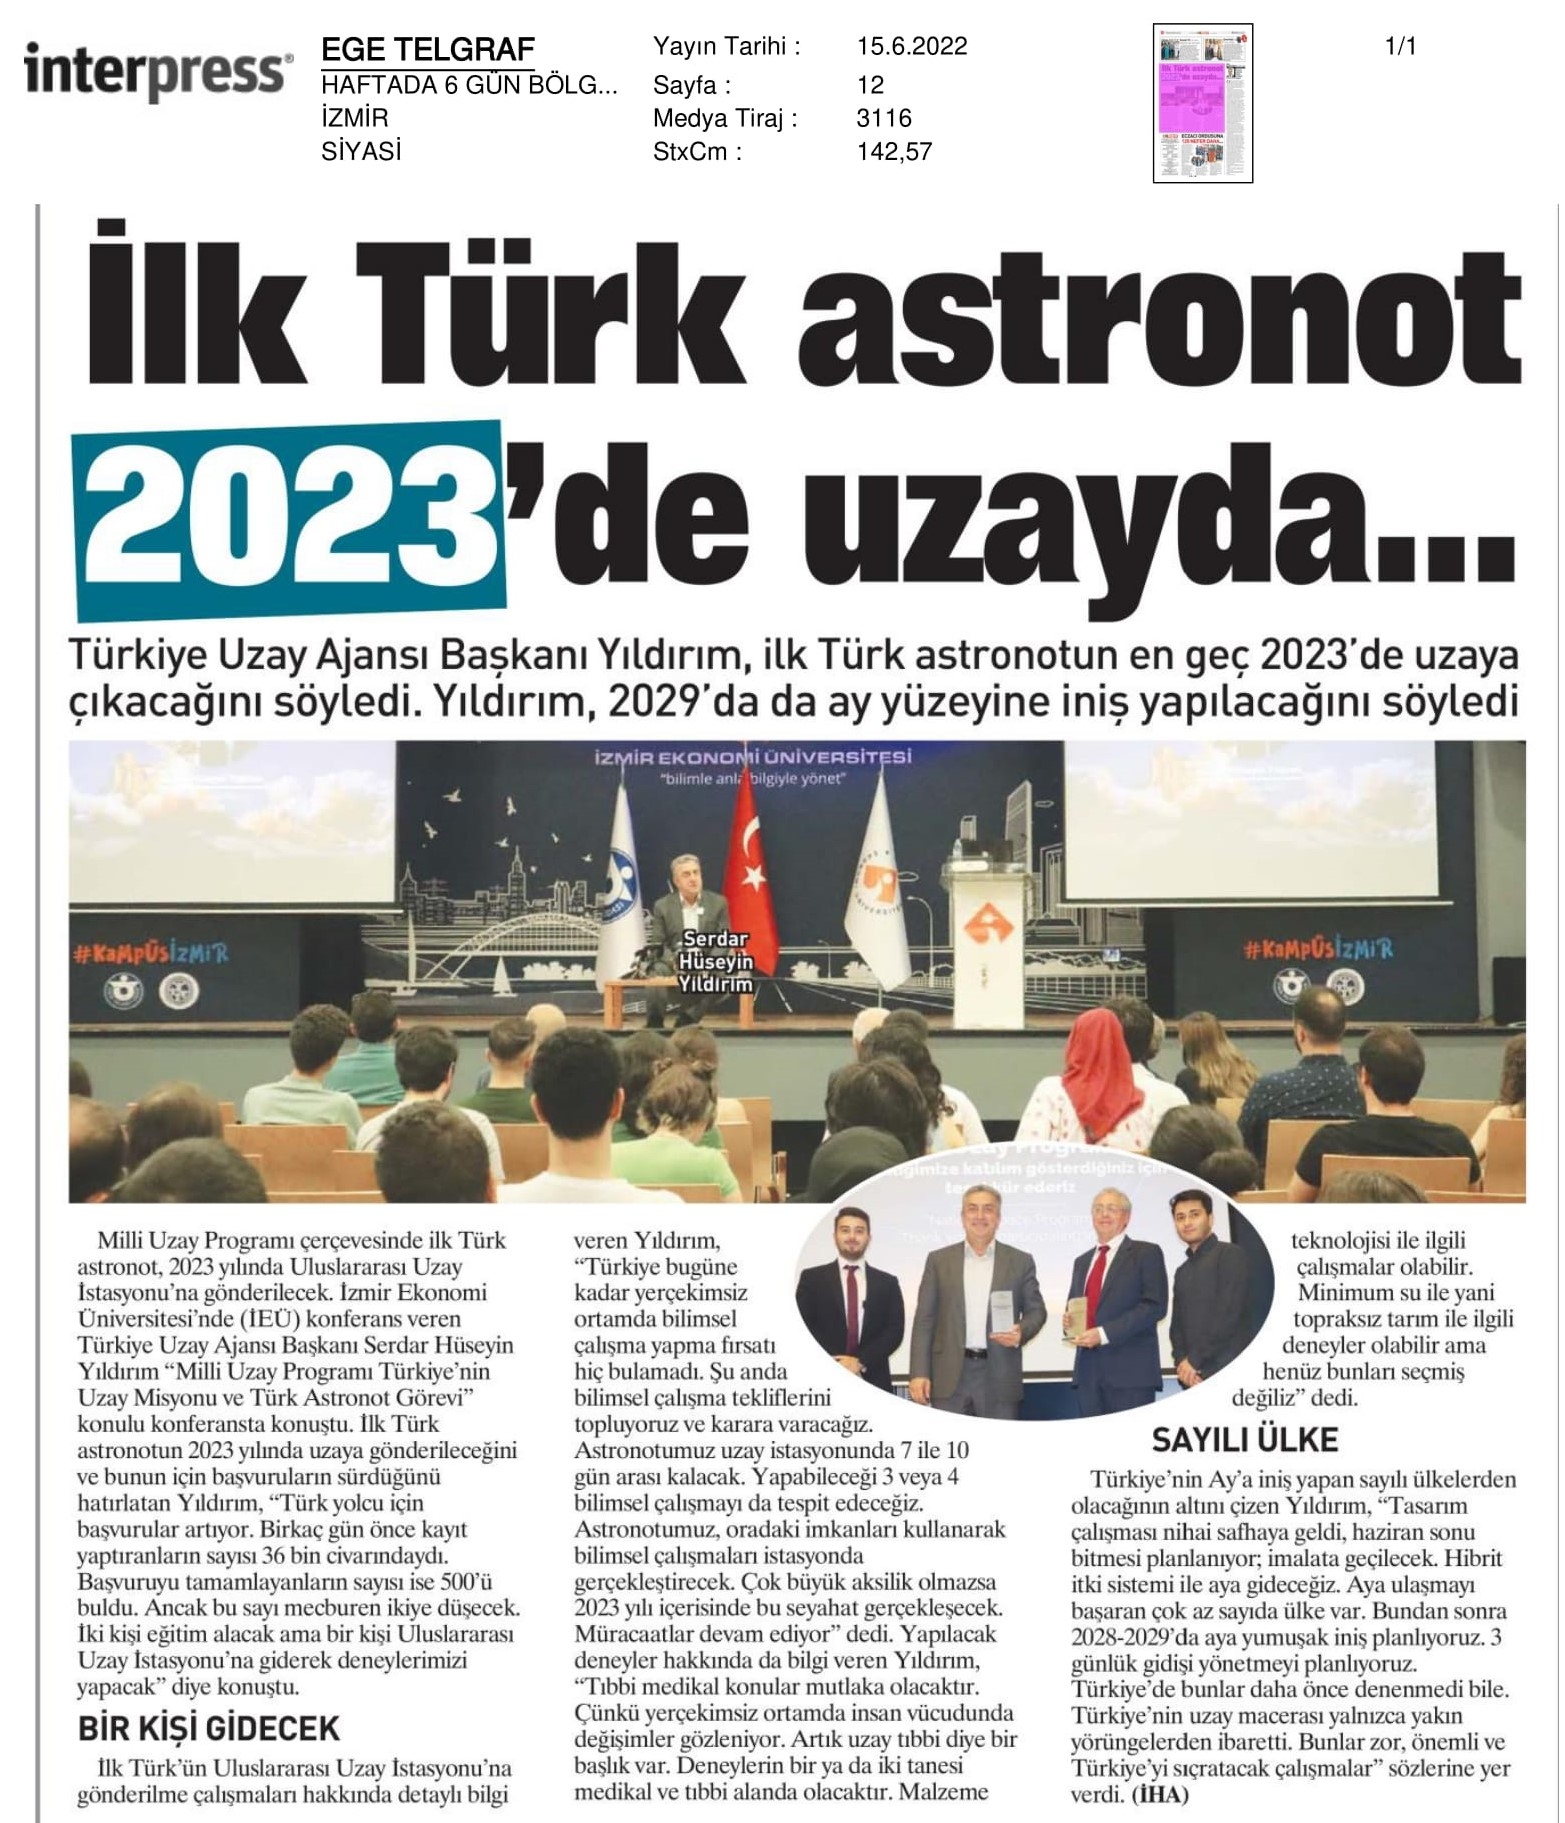 İzmir Ekonomi'de 'Türkiye'nin uzay hedefleri' konuşuldu